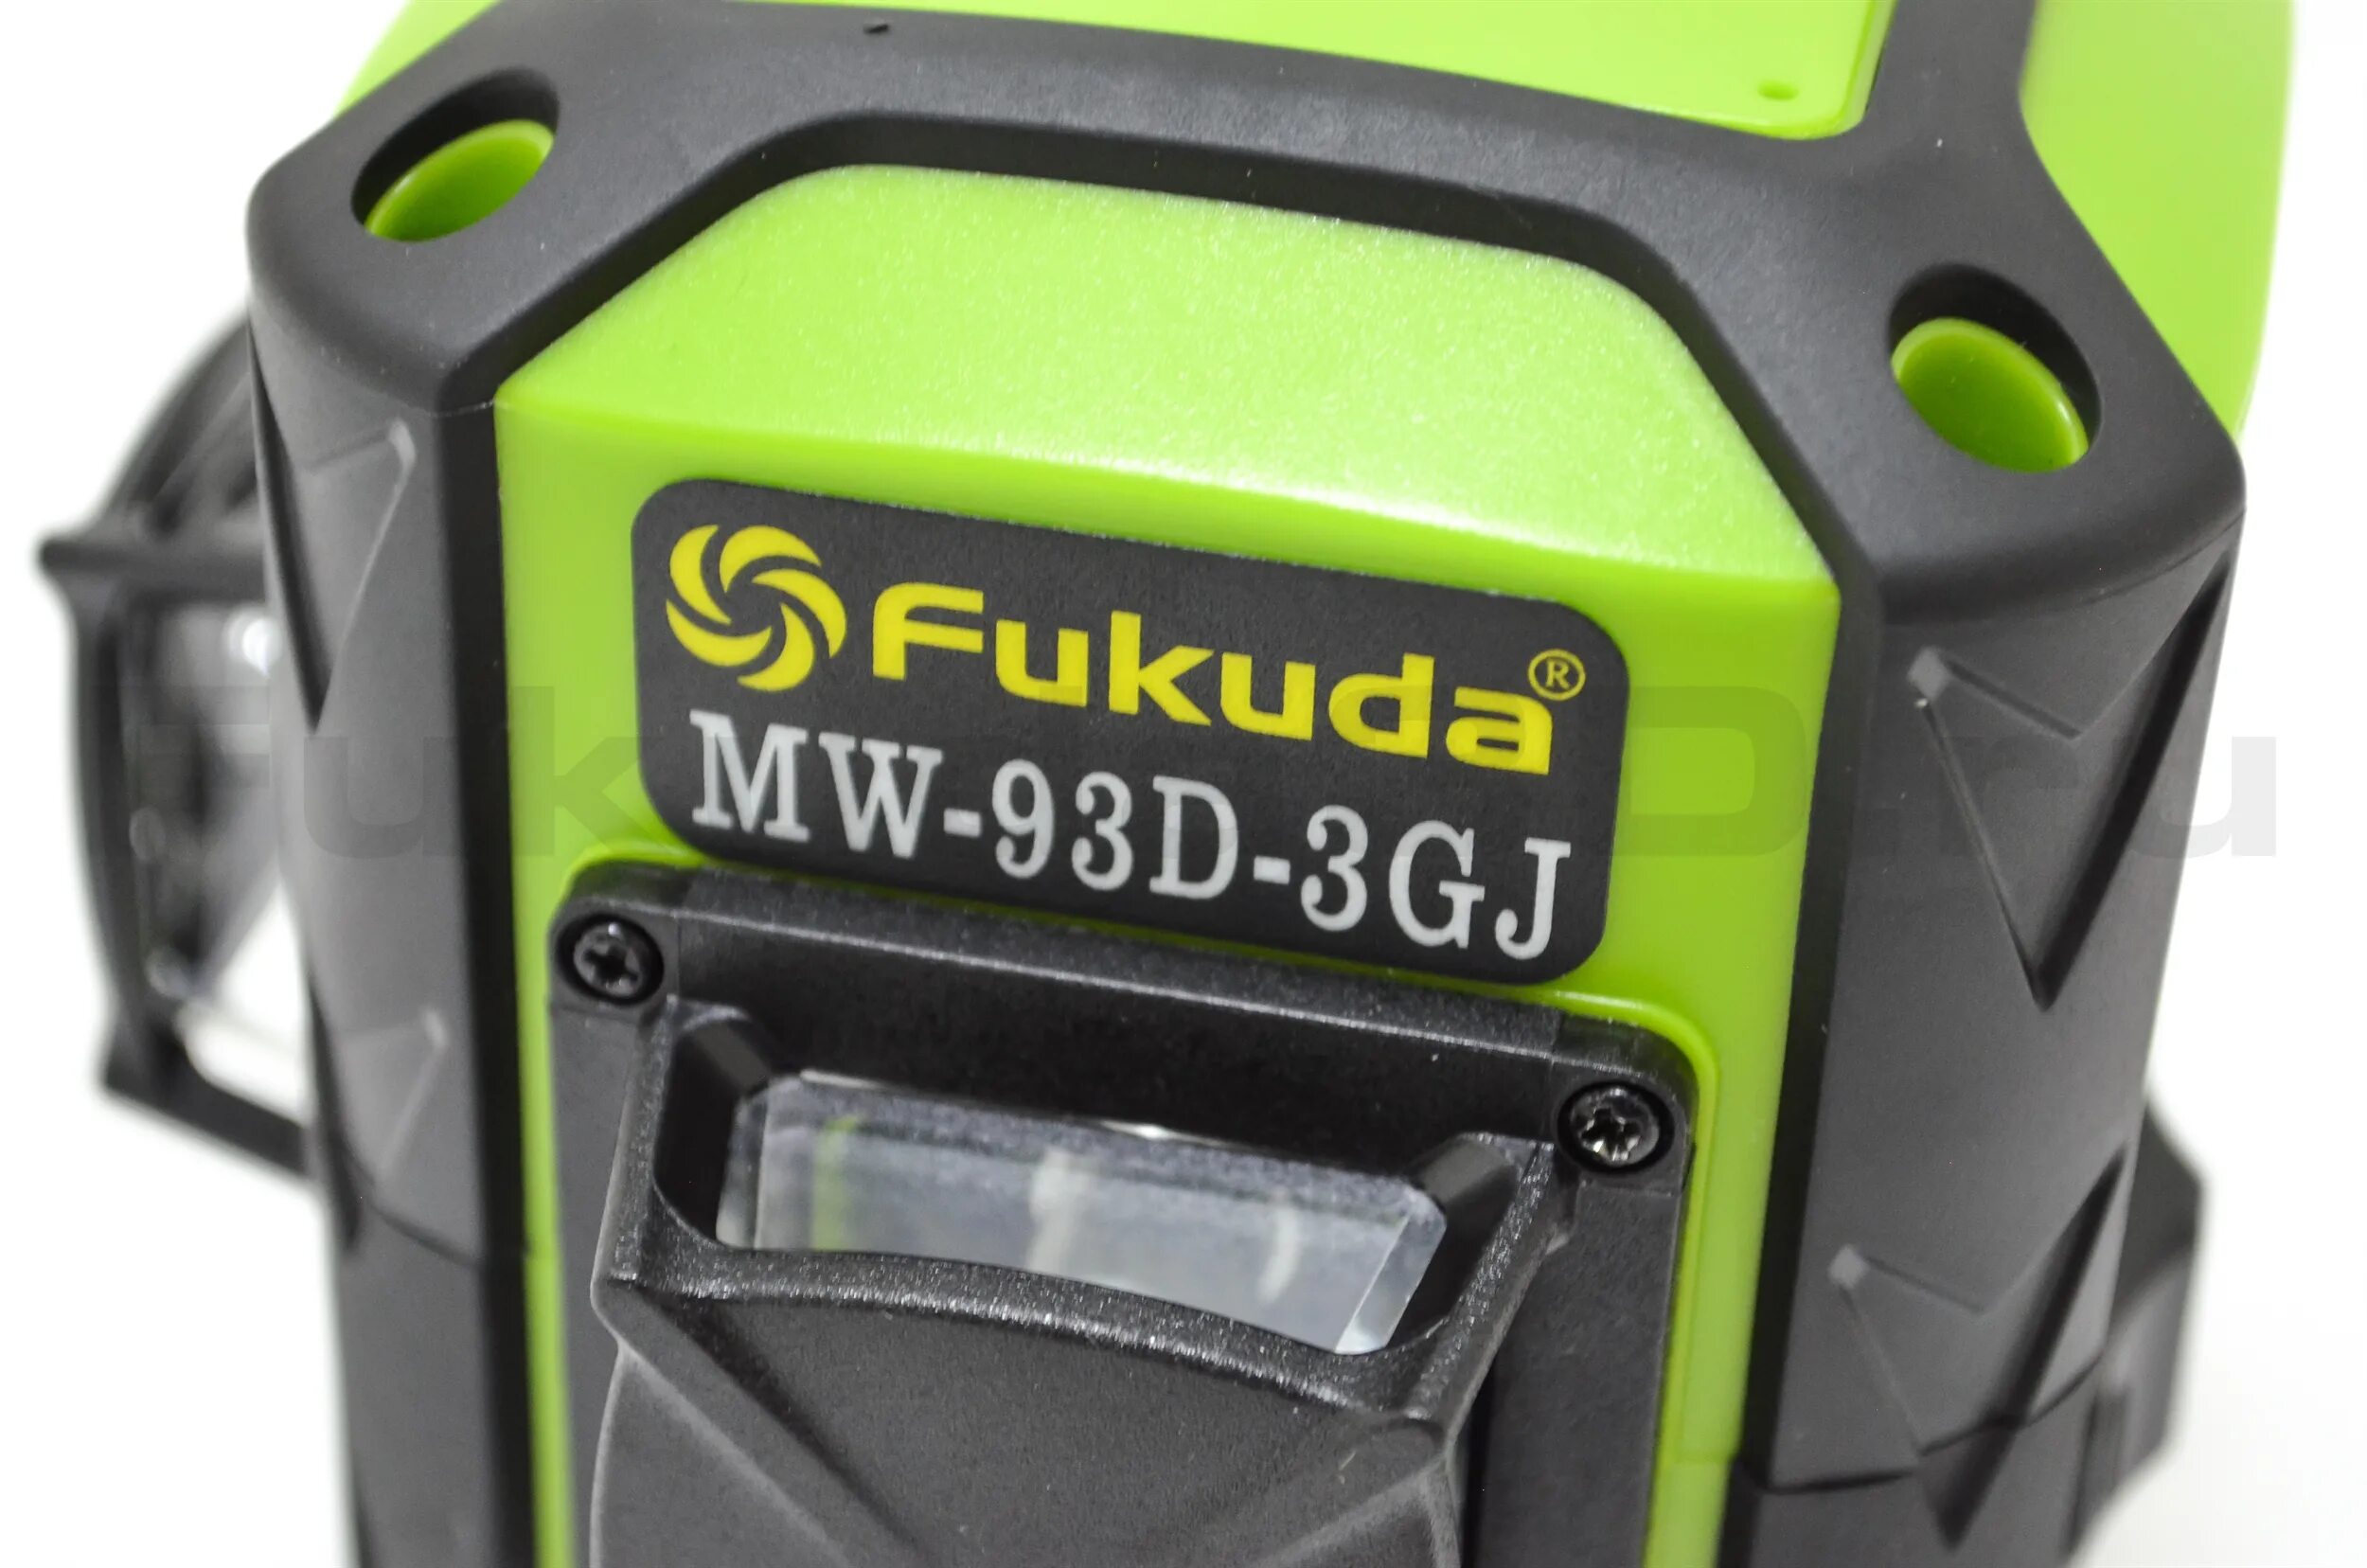 Фукуда купить лазерный. Лазерный нивелир Fukuda. Fukuda 3d MW. Fukuda MW-93d-3gj. Fukuda mw300d-3gx.